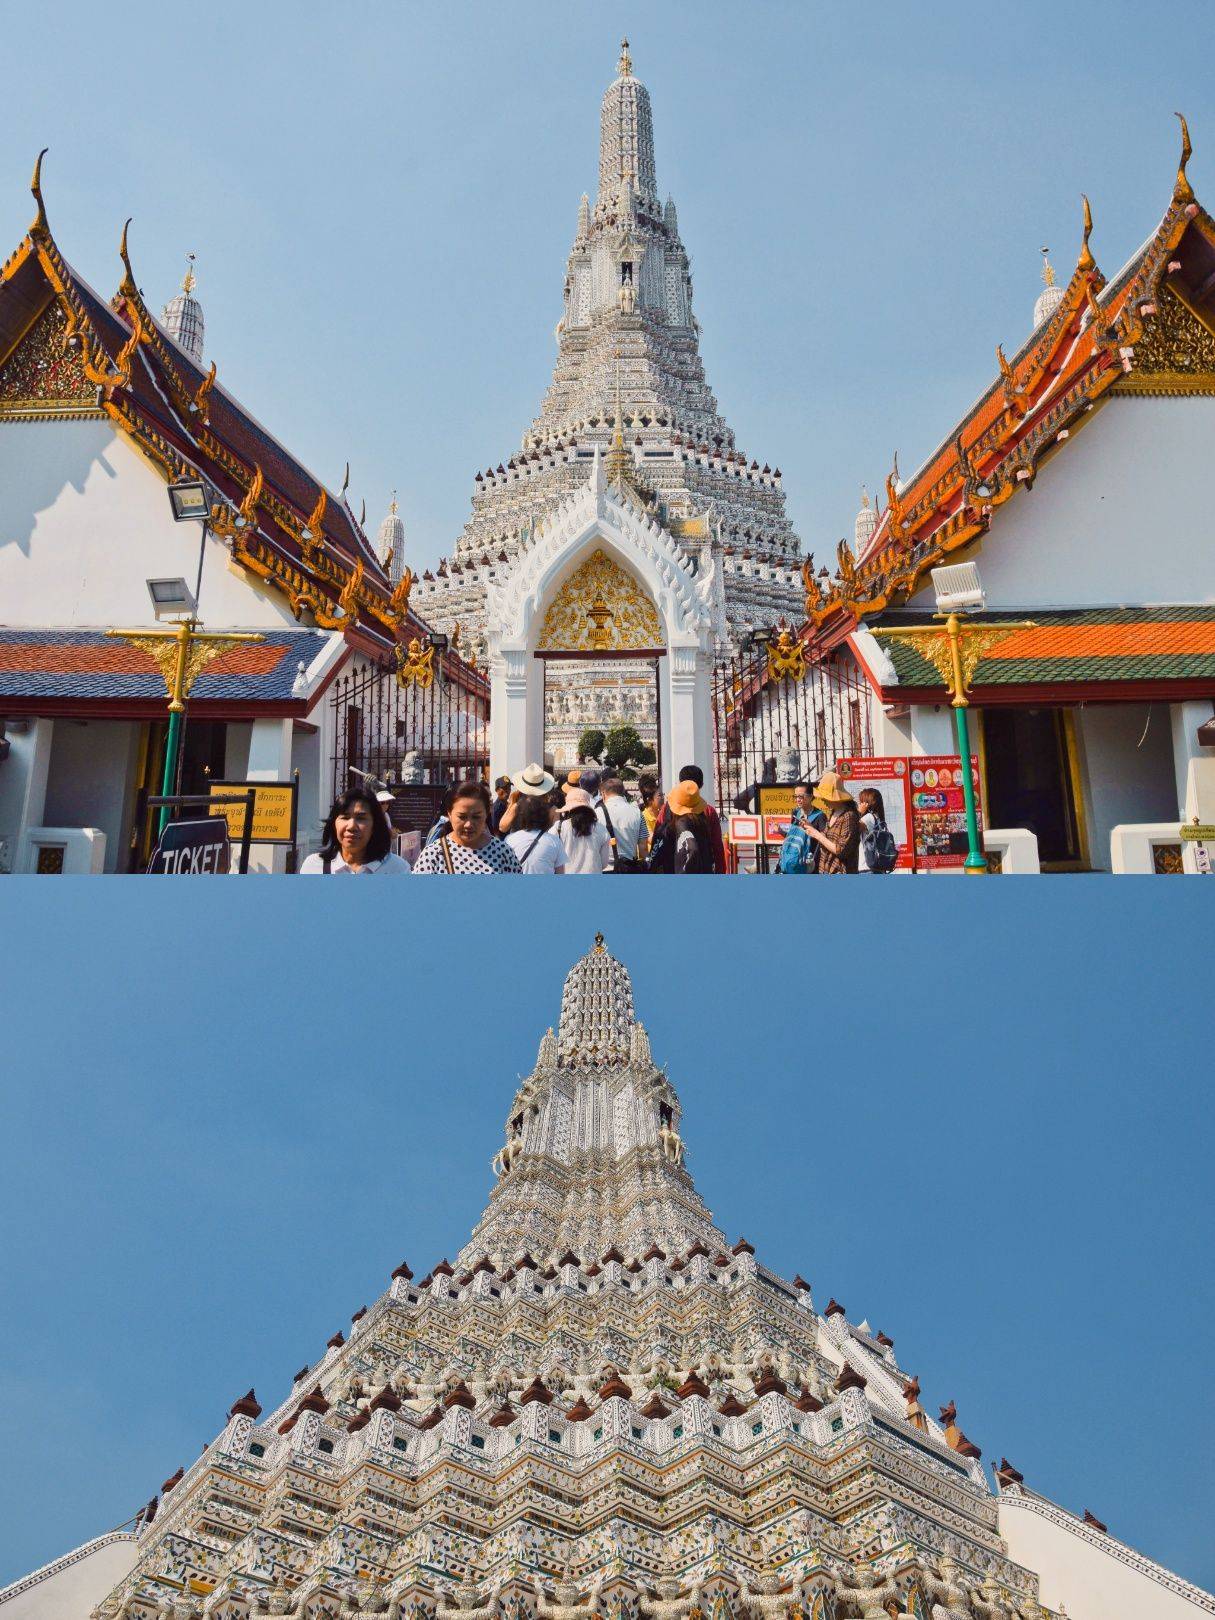 泰国曼谷芭堤雅自由行三天旅游攻略曼谷芭堤雅三日游最佳路线